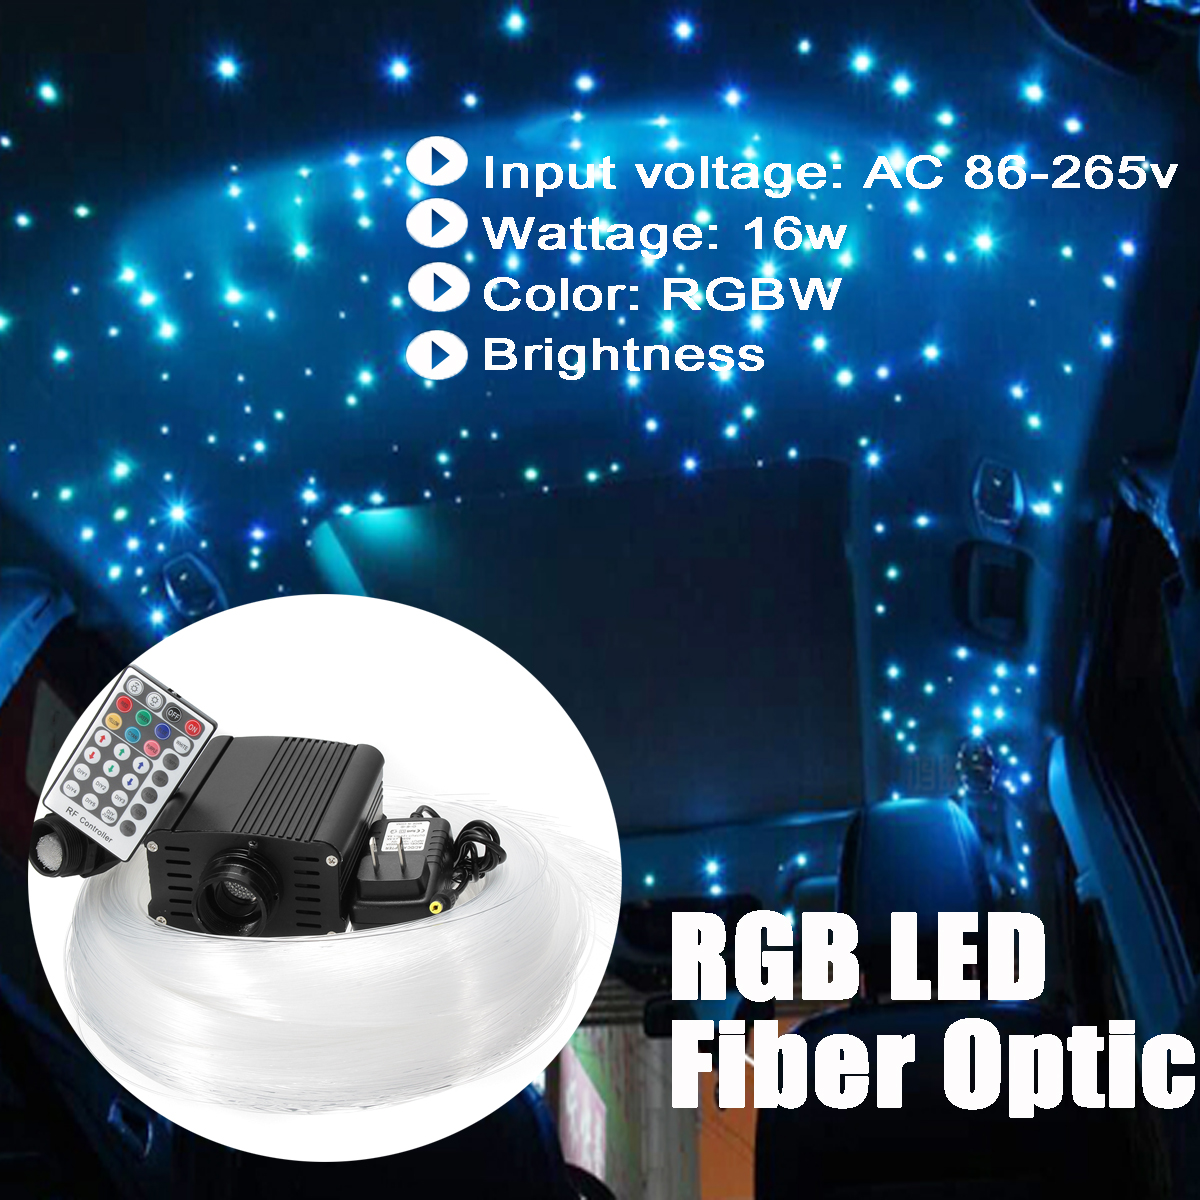 16W-RGBW-Engine-Remote-LED-Fiber-Optic-Star-Ceiling-Kit-Light-Fiber-Optic-Lamp-Light-Source-Device-E-1532732-3